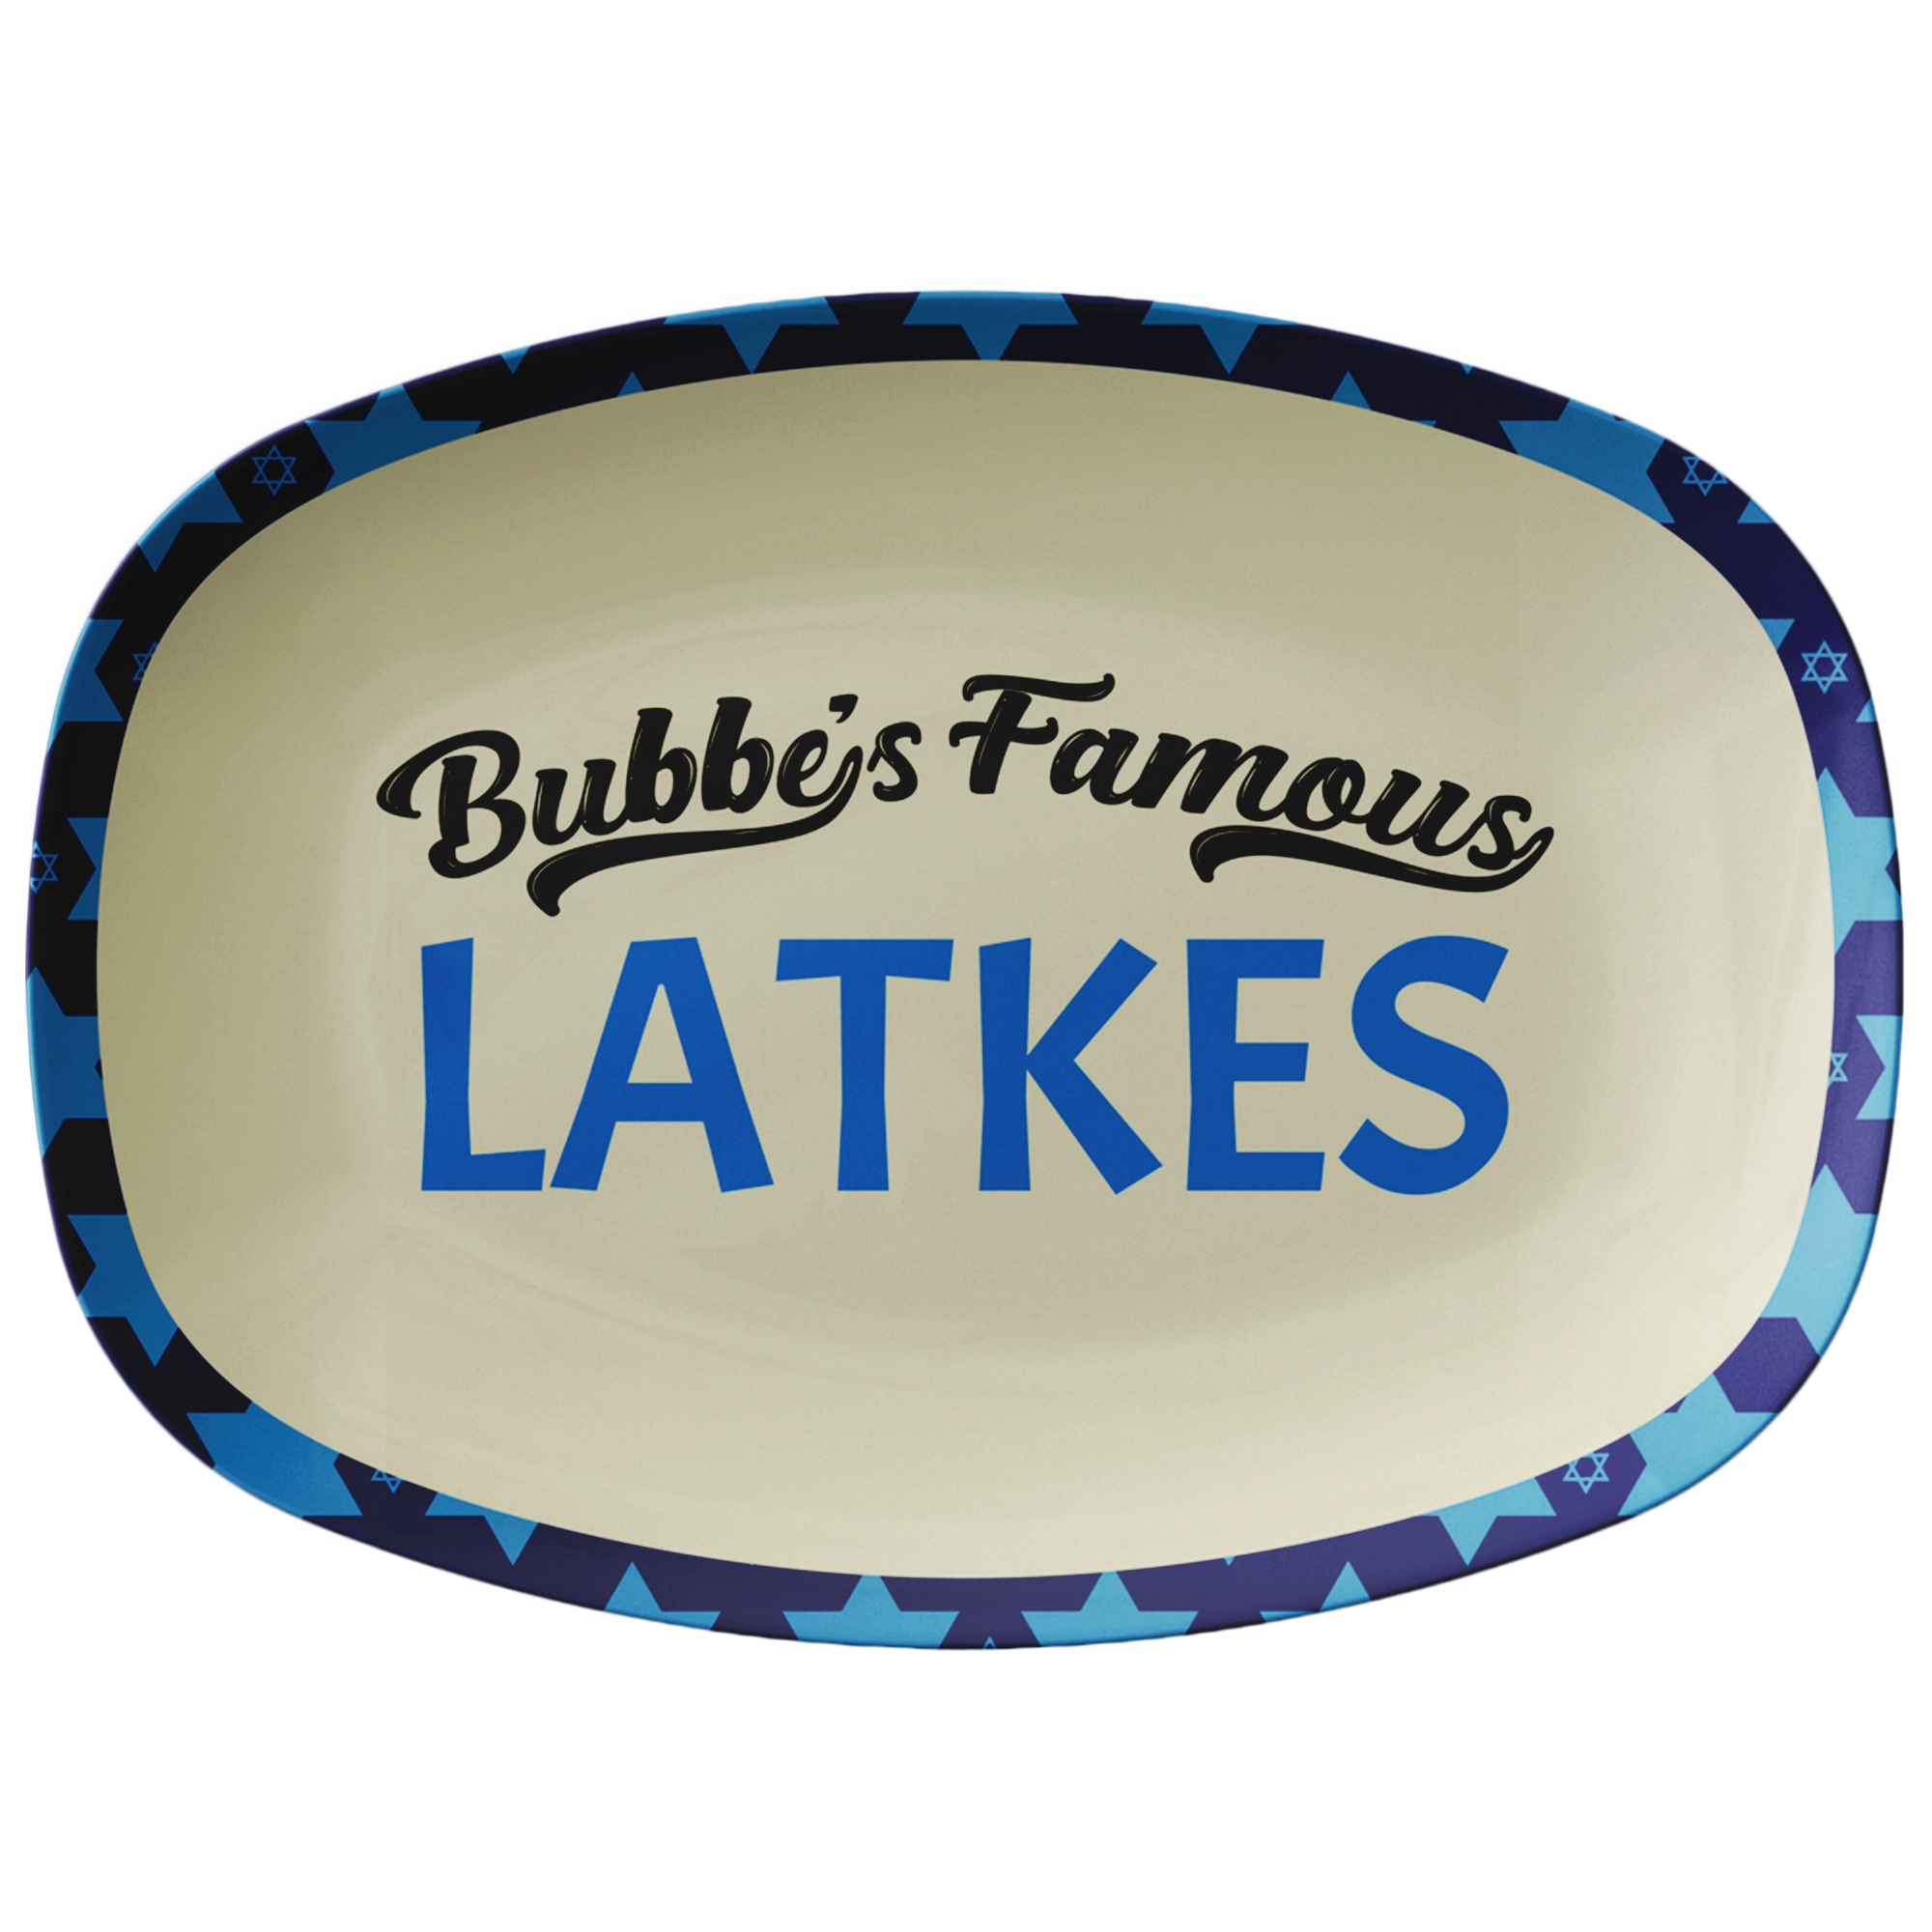 bubbes famous latkes serving platter